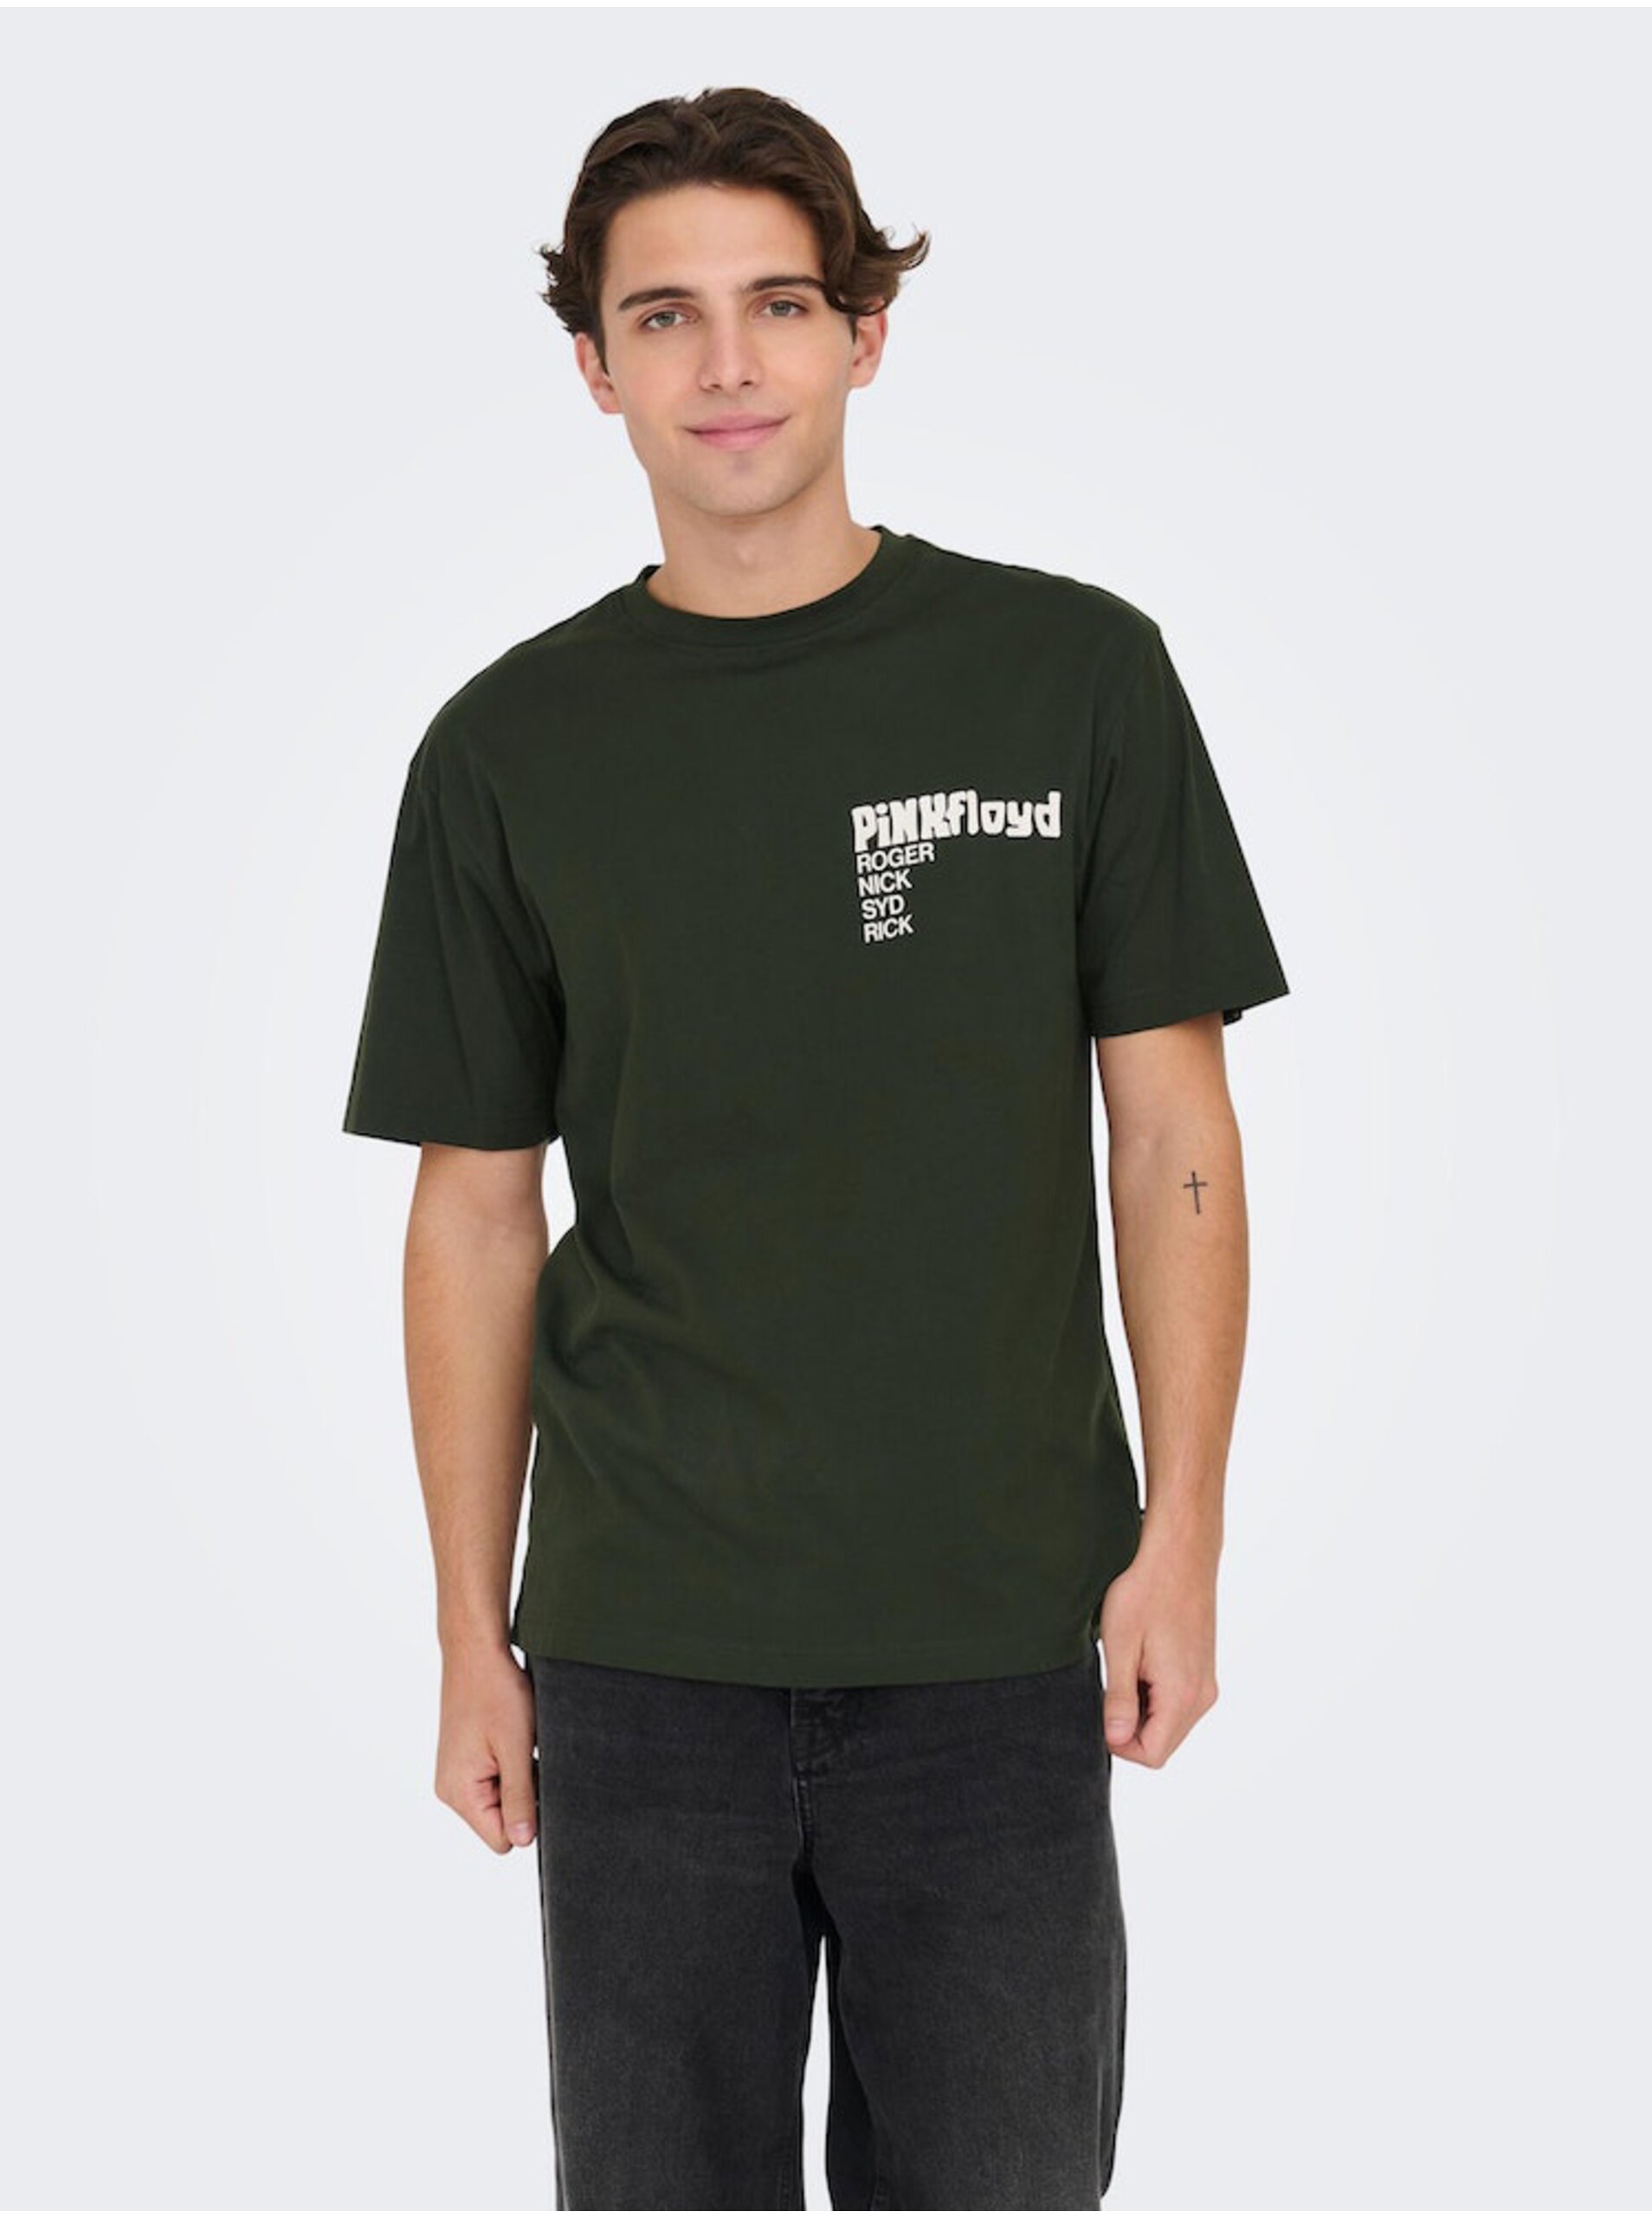 E-shop Tmavě zelené pánské tričko s krátkým rukávem ONLY & SONS Pink Floyd